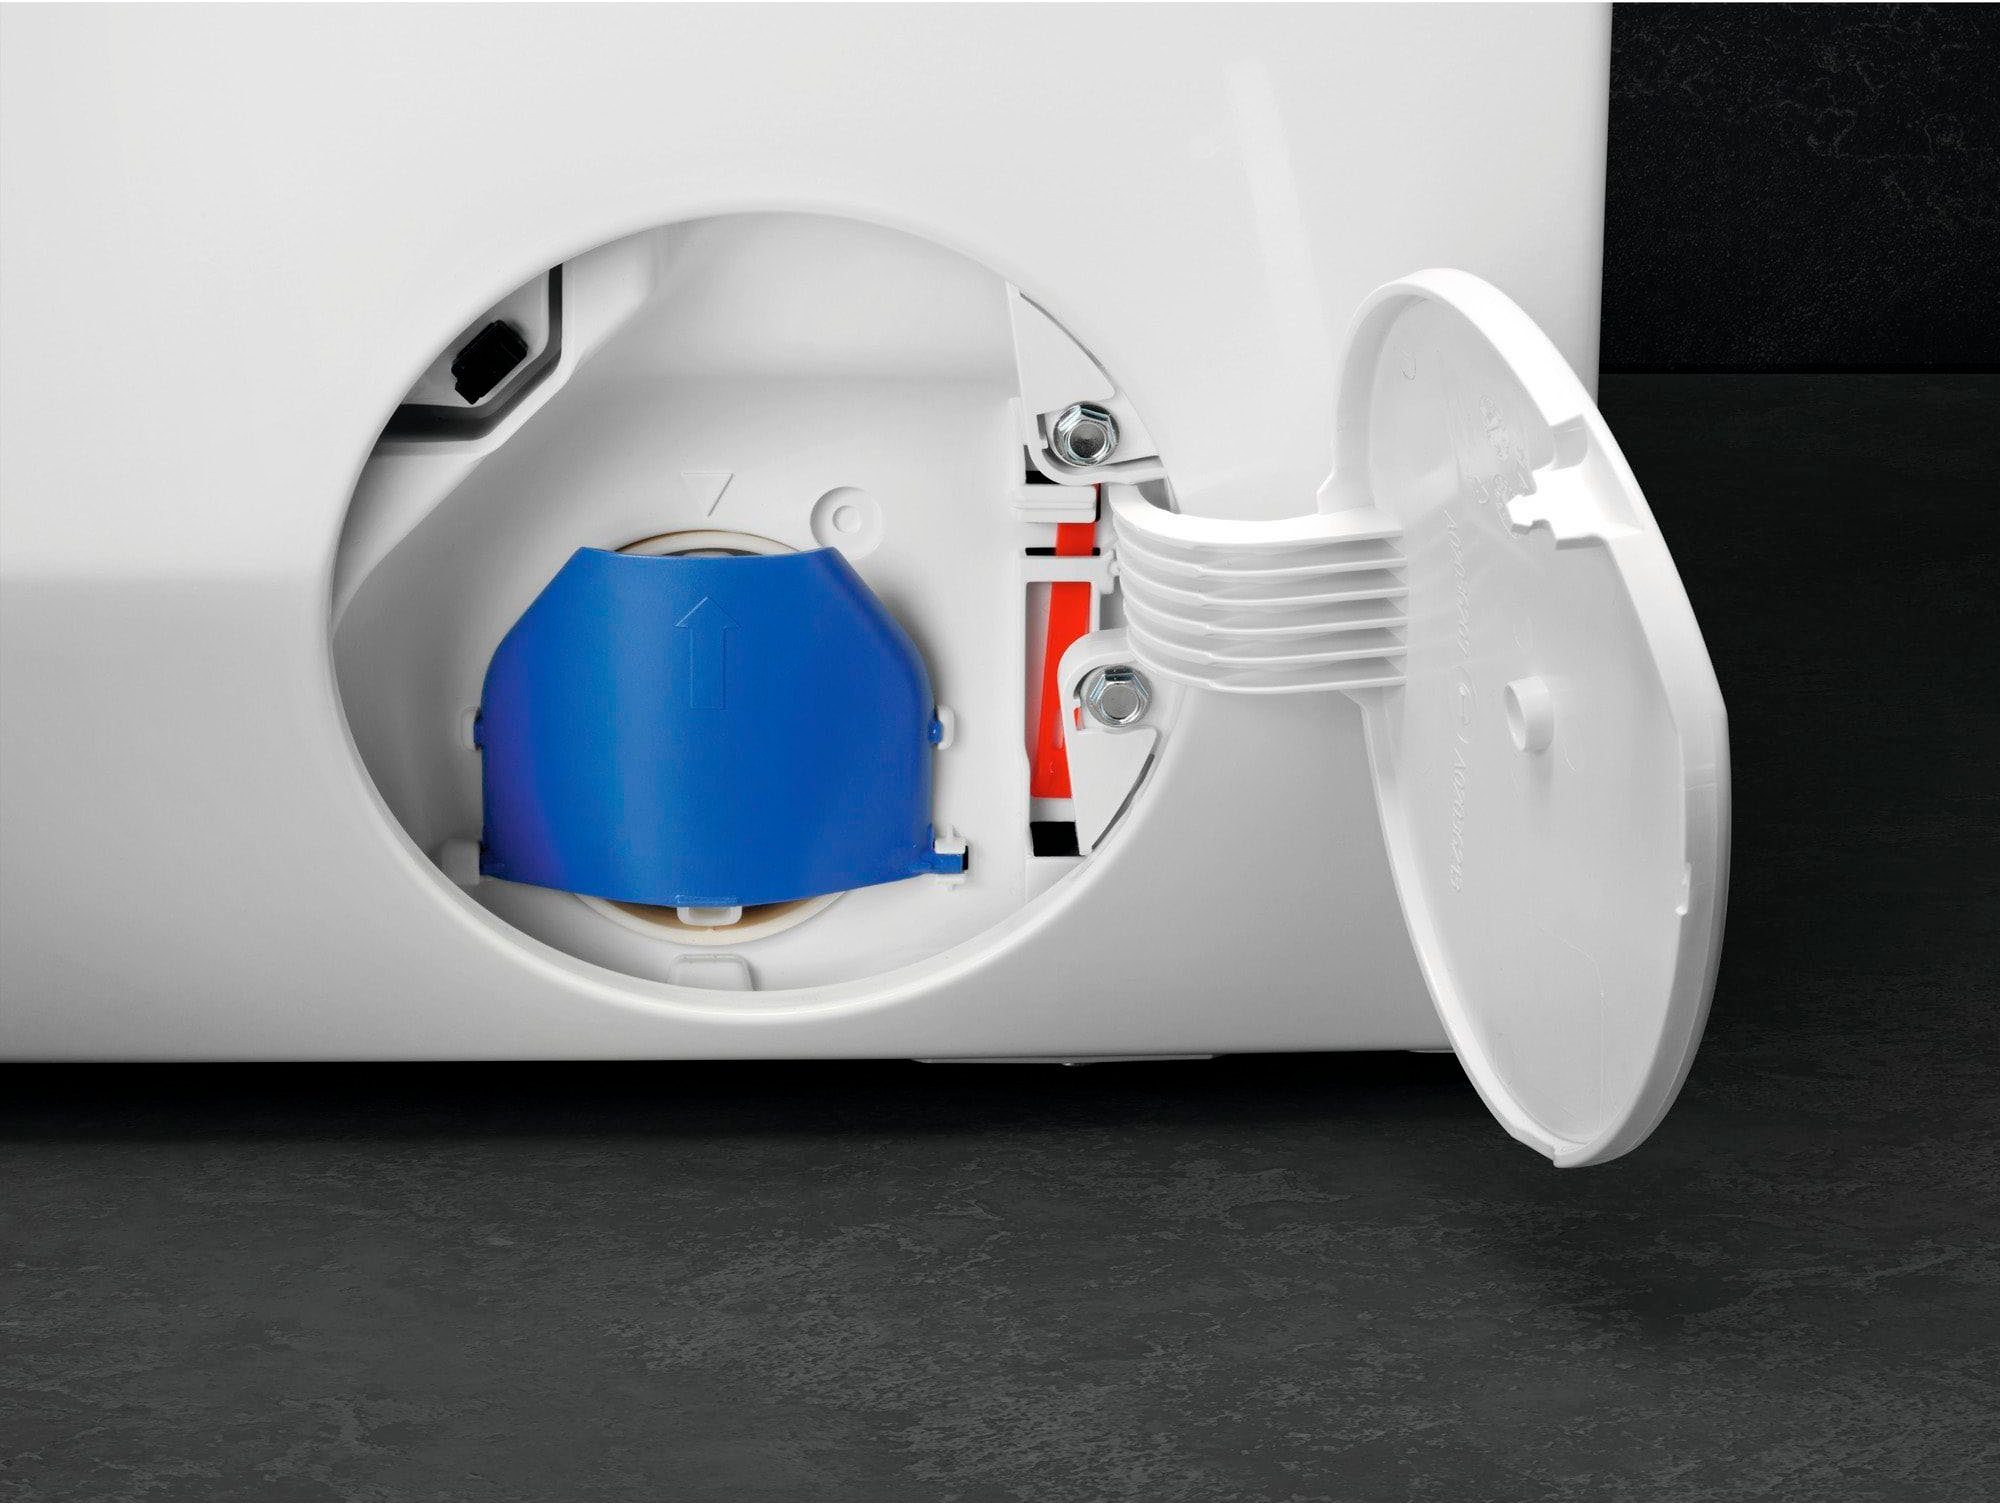 AEG Waschmaschine 7000 LR7A70490, 9 % weniger Wasserverbrauch kg, Dampf-Programm ProSteam 96 U/min, - 1400 für